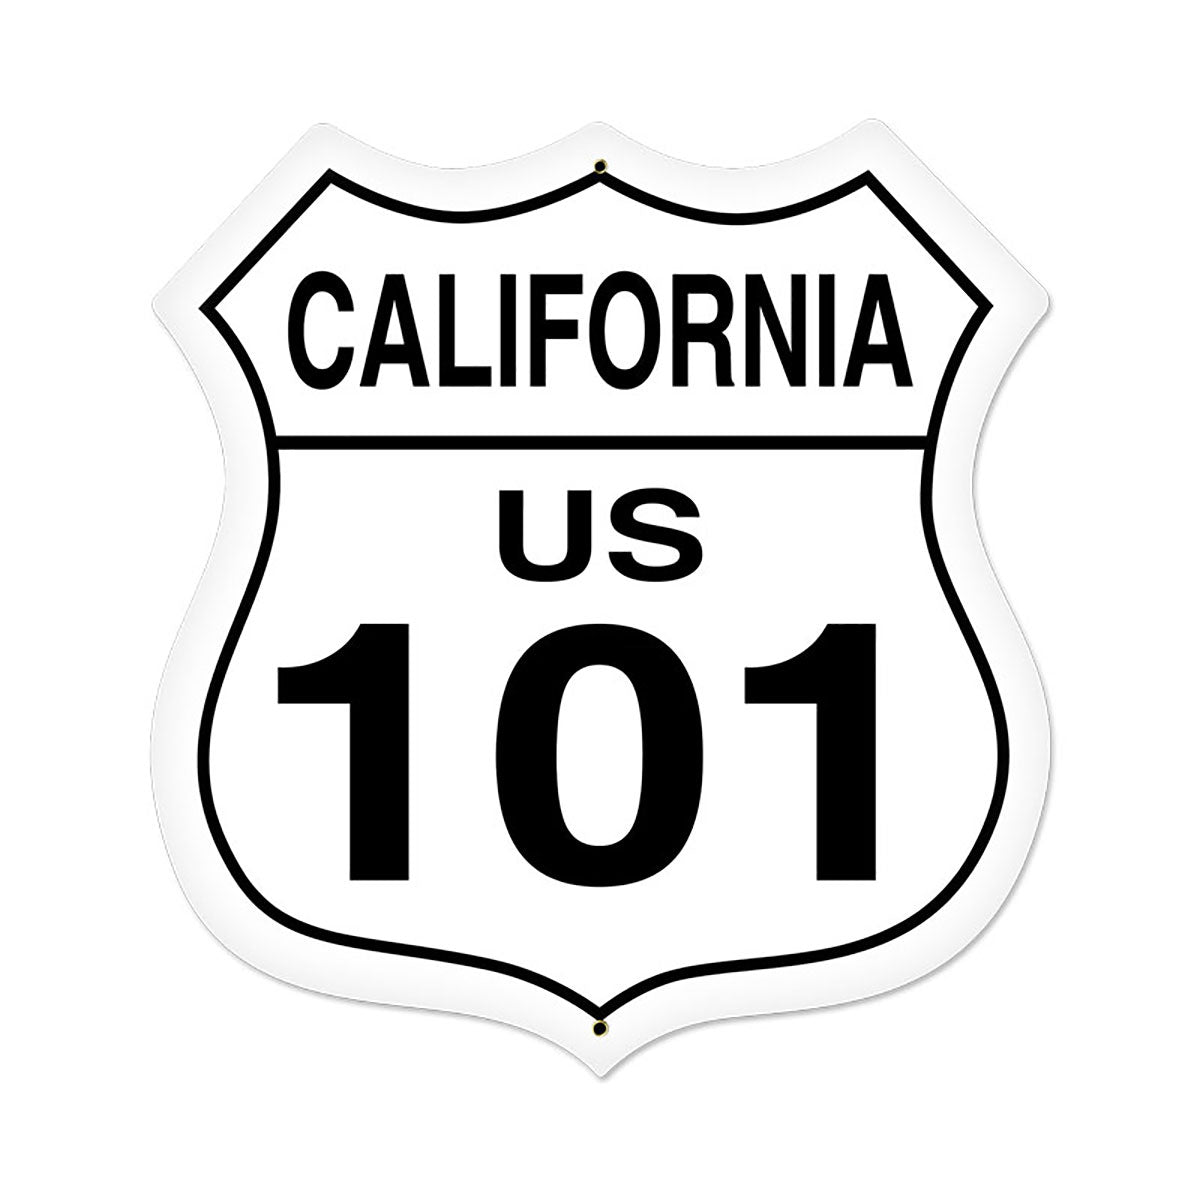 101 freeway sign